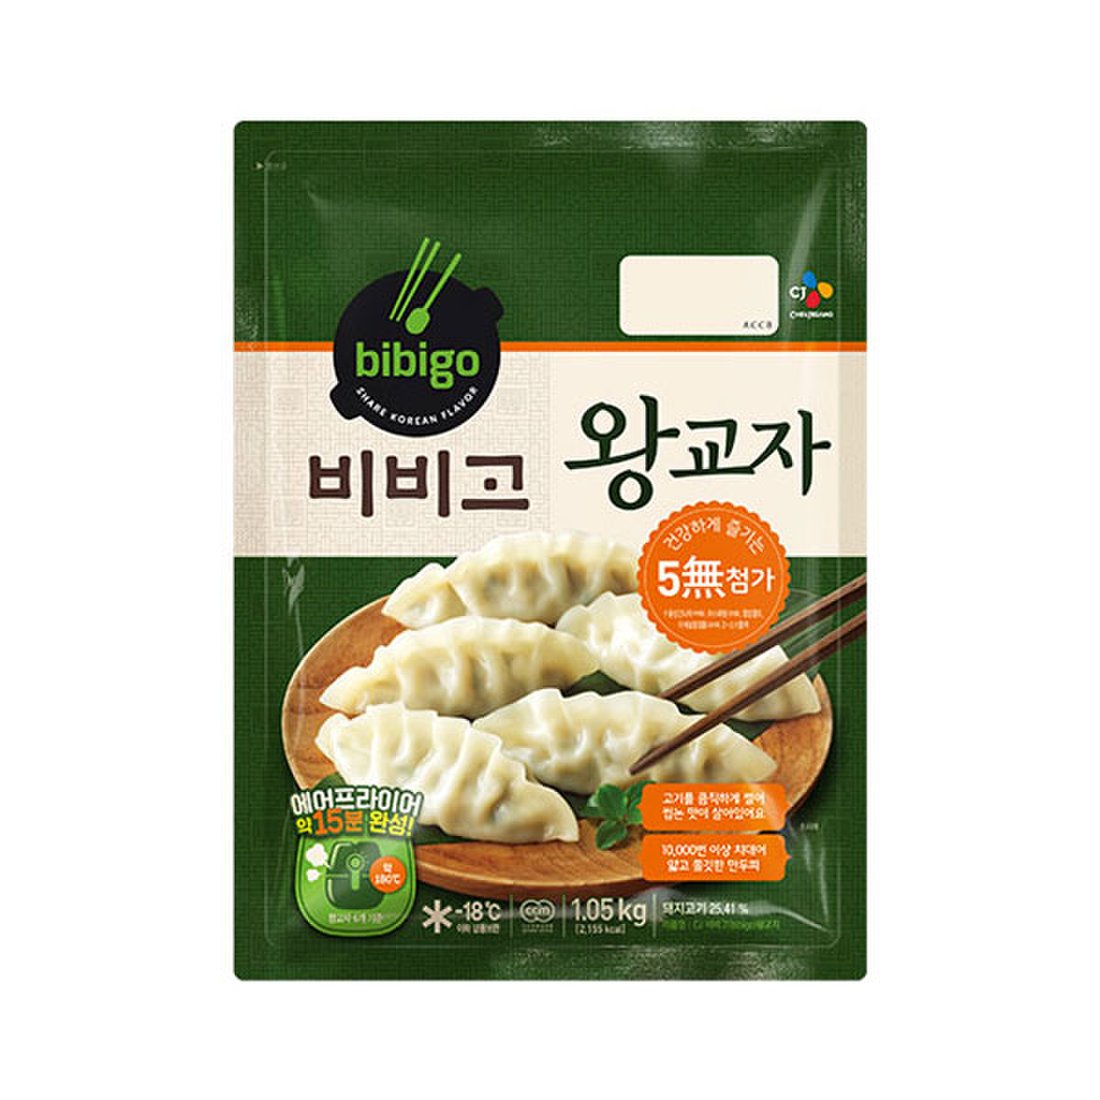 CJ Bibigo Pork & Vegetable Dumplings (Mandu) - Frozen 500g/CJ 비비고 돼지고기 야채 왕교자 만두 500%